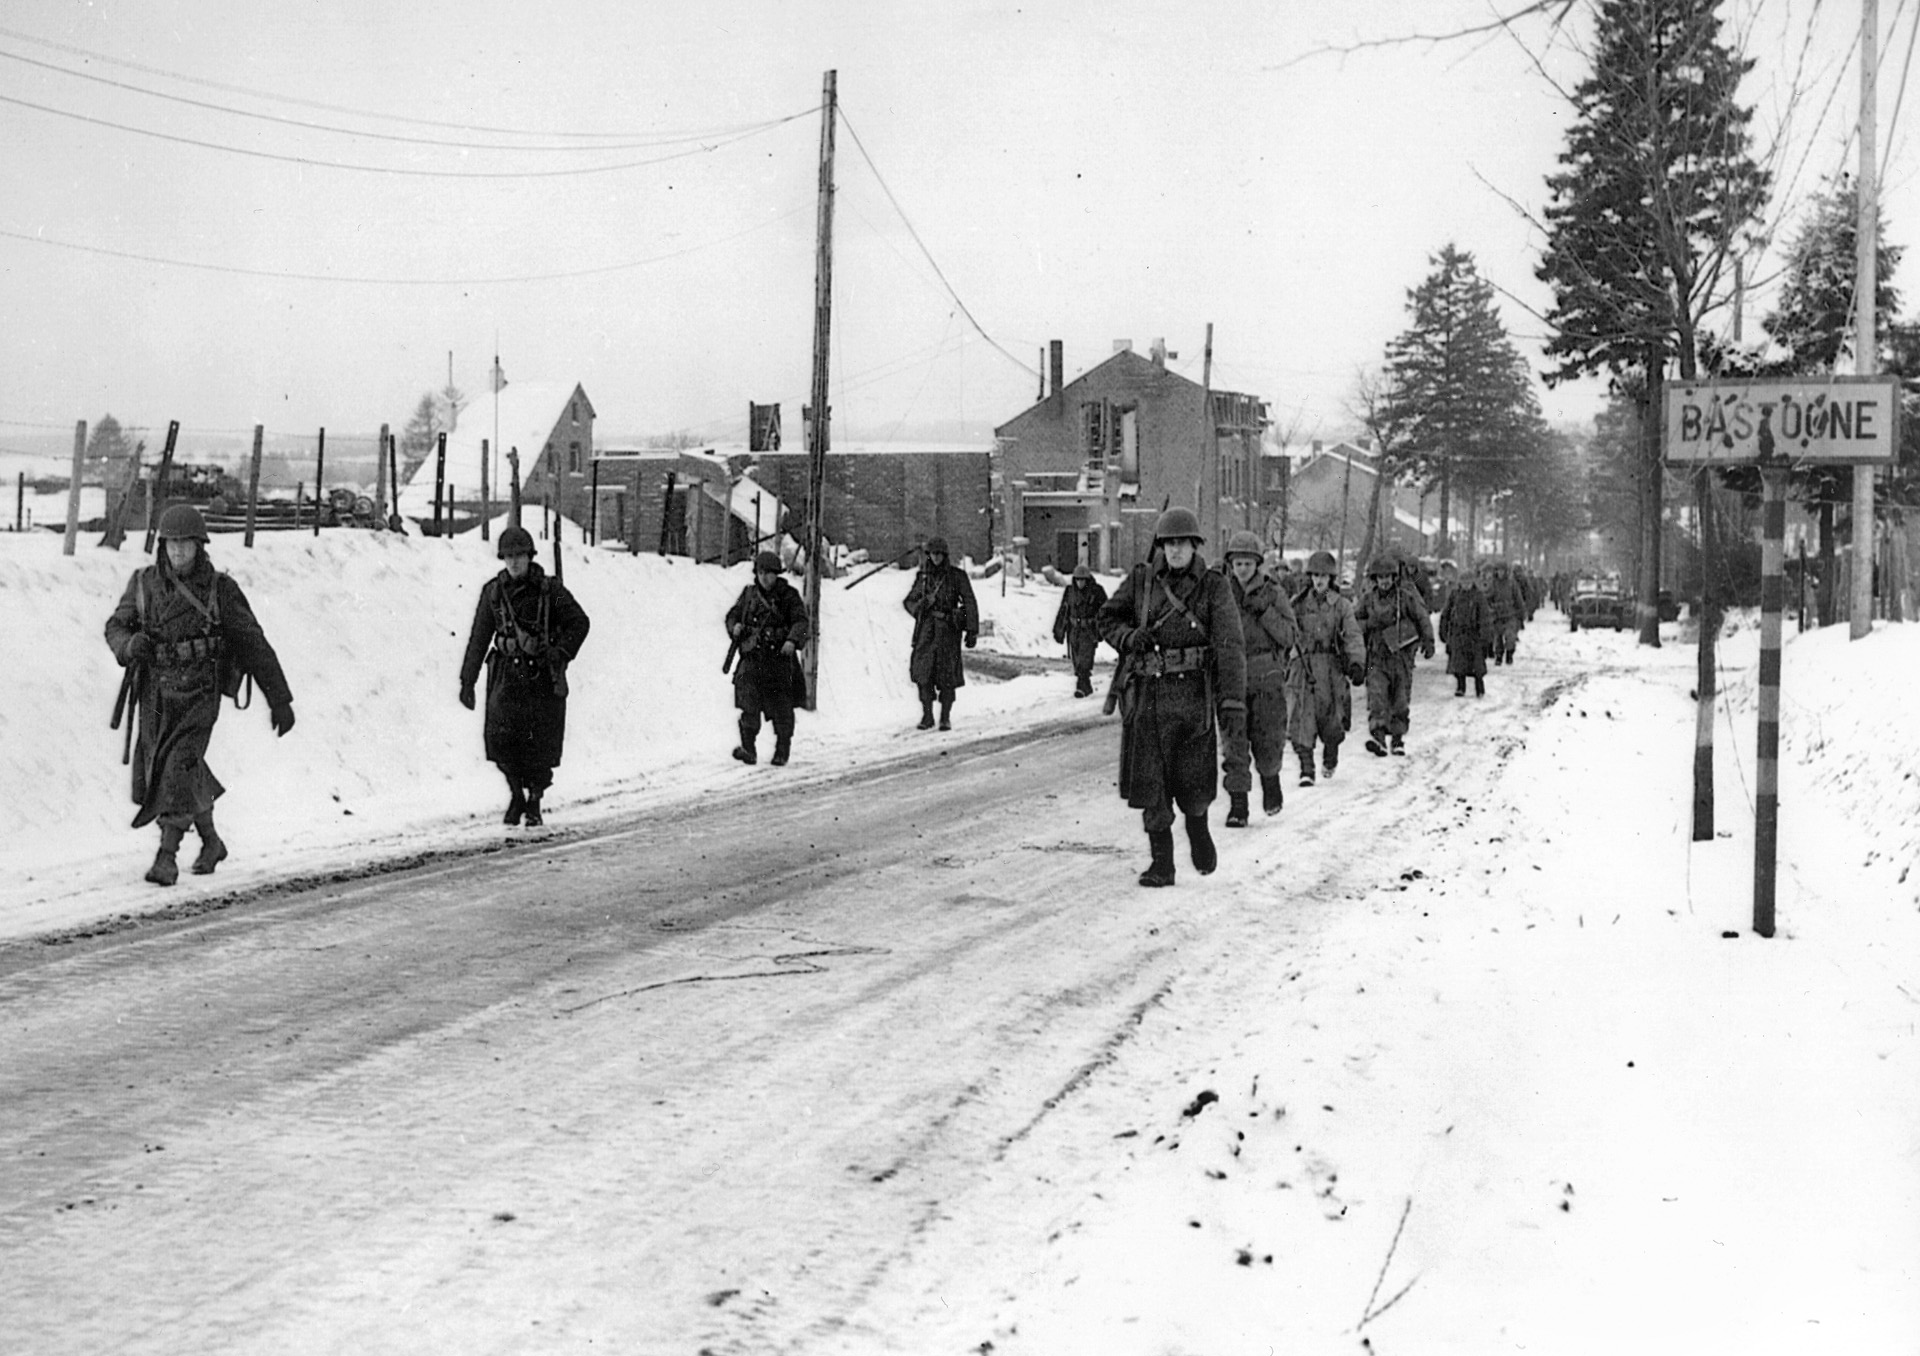 第101空降师的伞兵在成功保卫巴斯通免遭德军攻击后，从巴斯通撤离。唐·马拉基在巴斯通附近的树林里失去了很多朋友。“斯基普”穆克的死一直困扰着他的余生。